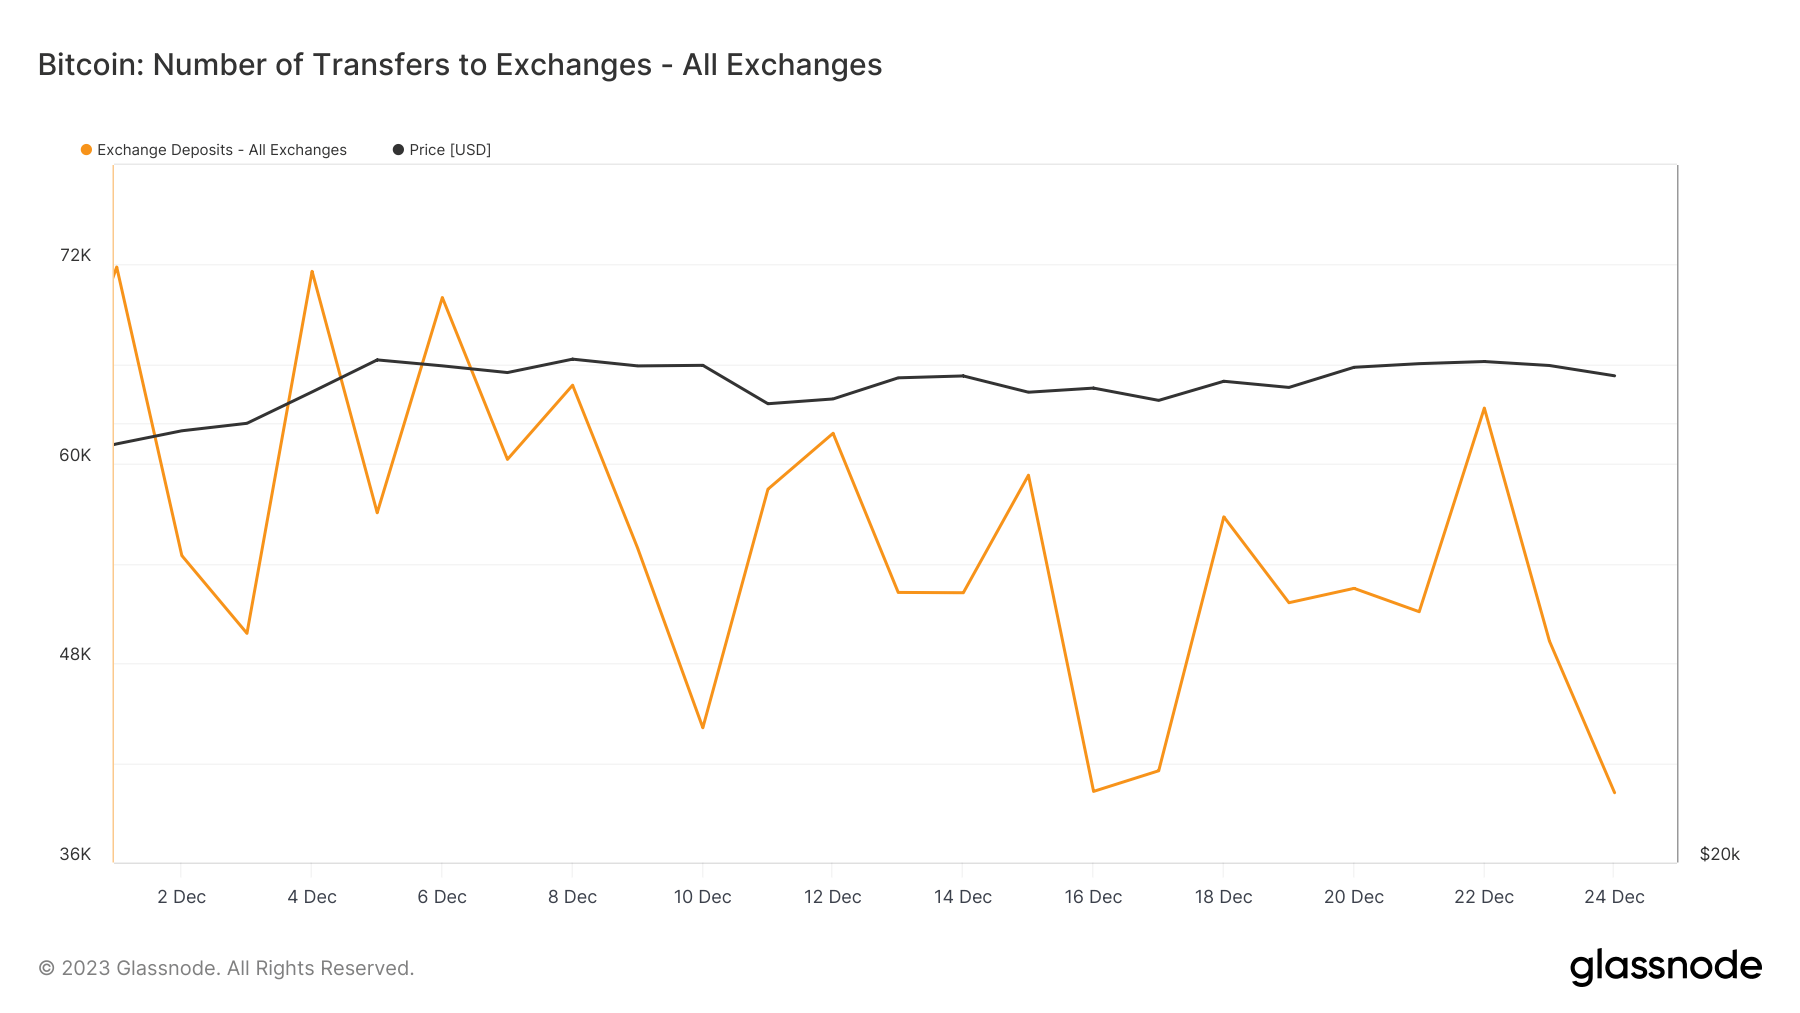 exchanges bitcoin deposits december